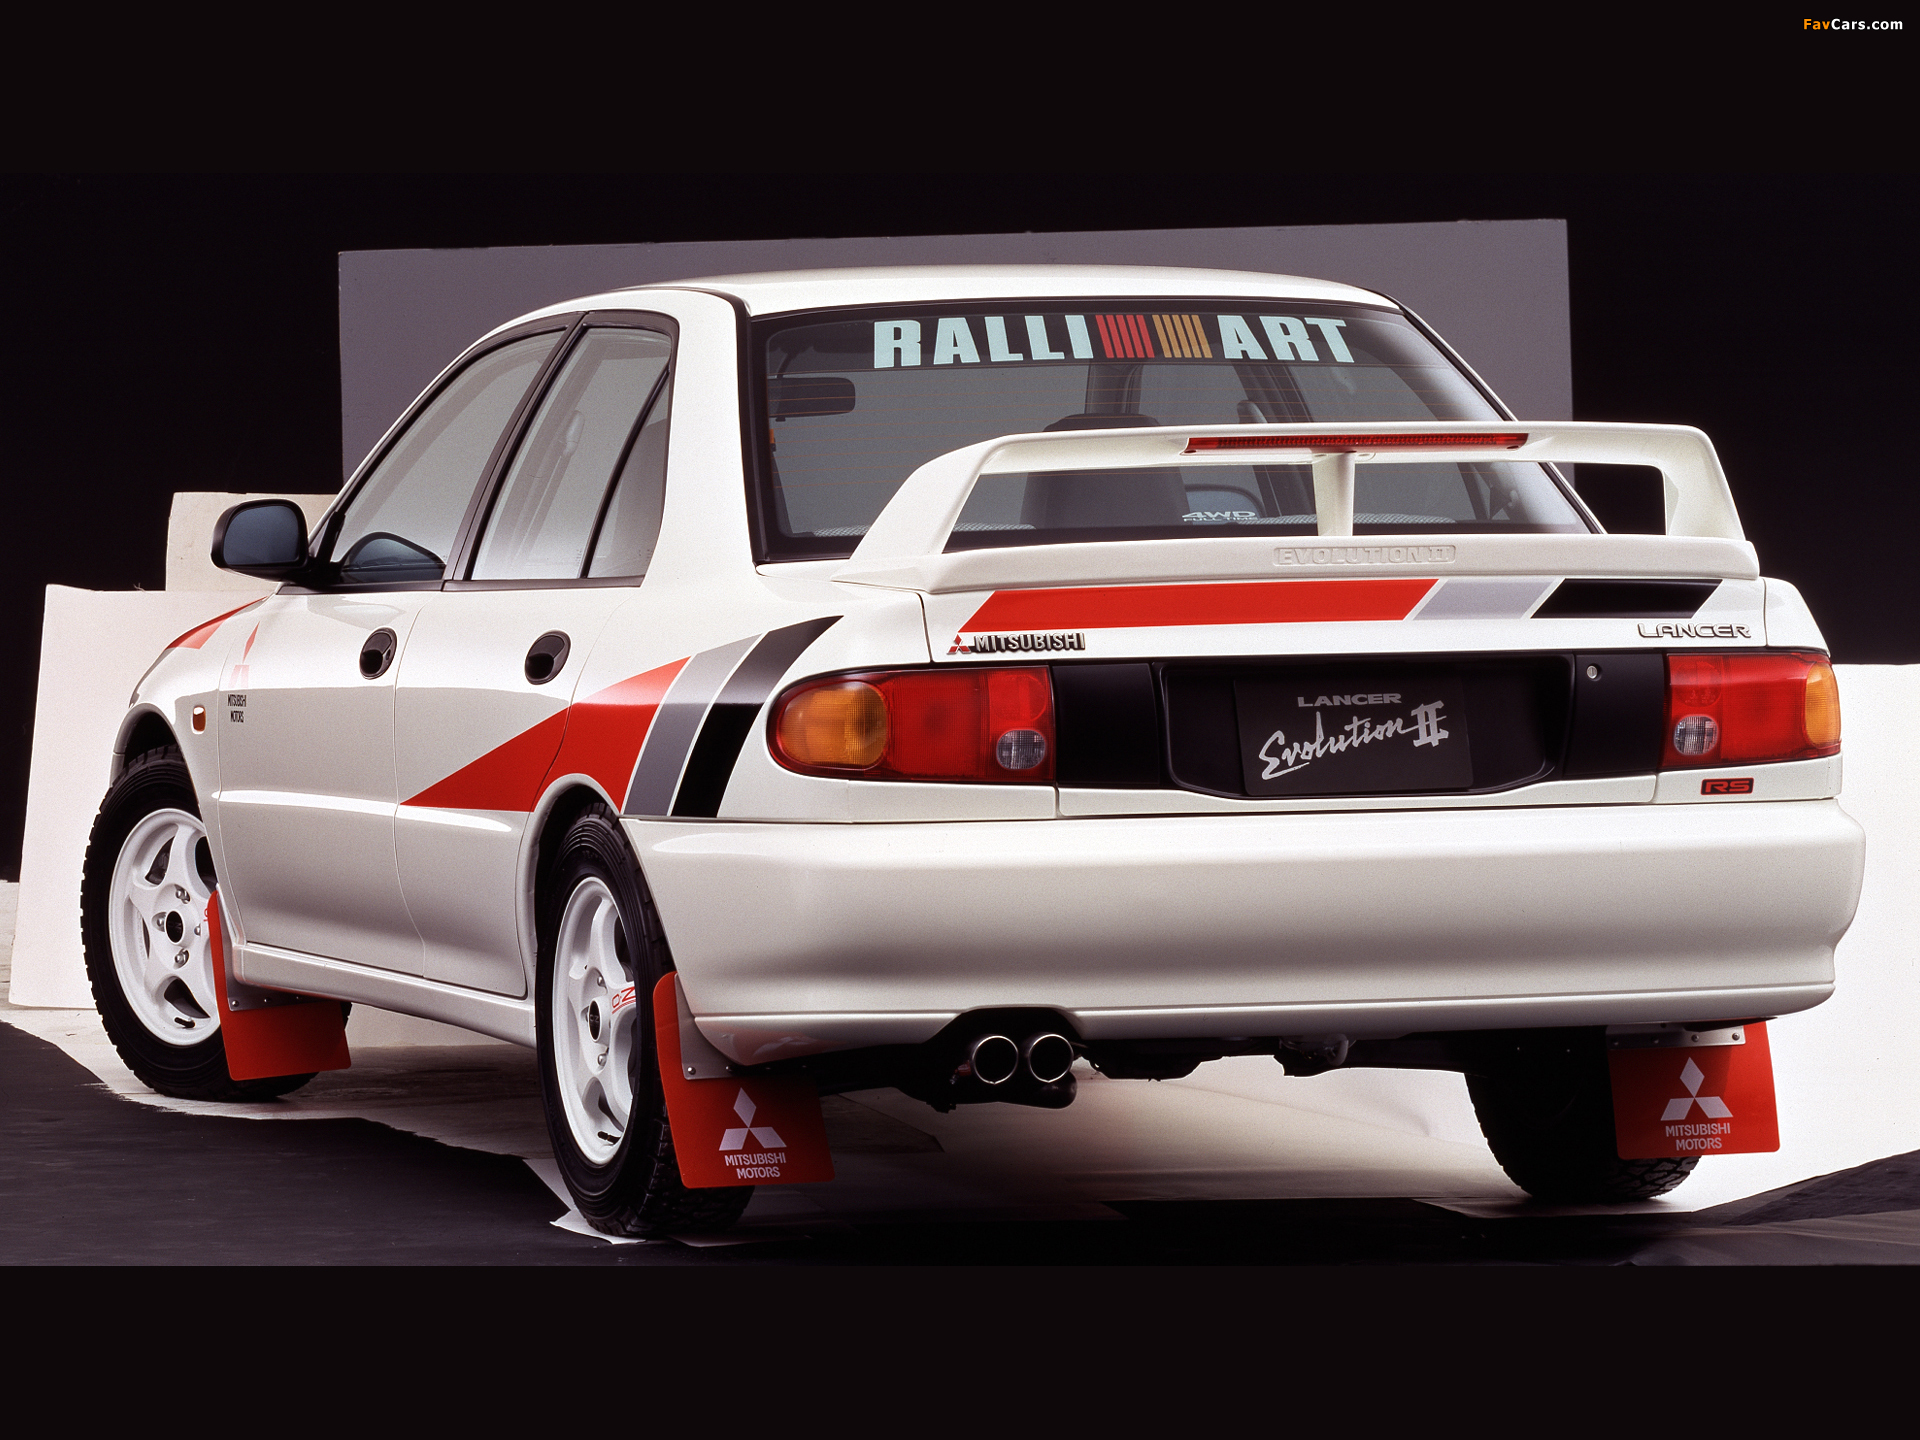 Ralliart Mitsubishi Lancer Rs Evolution Ii Ce9a Image